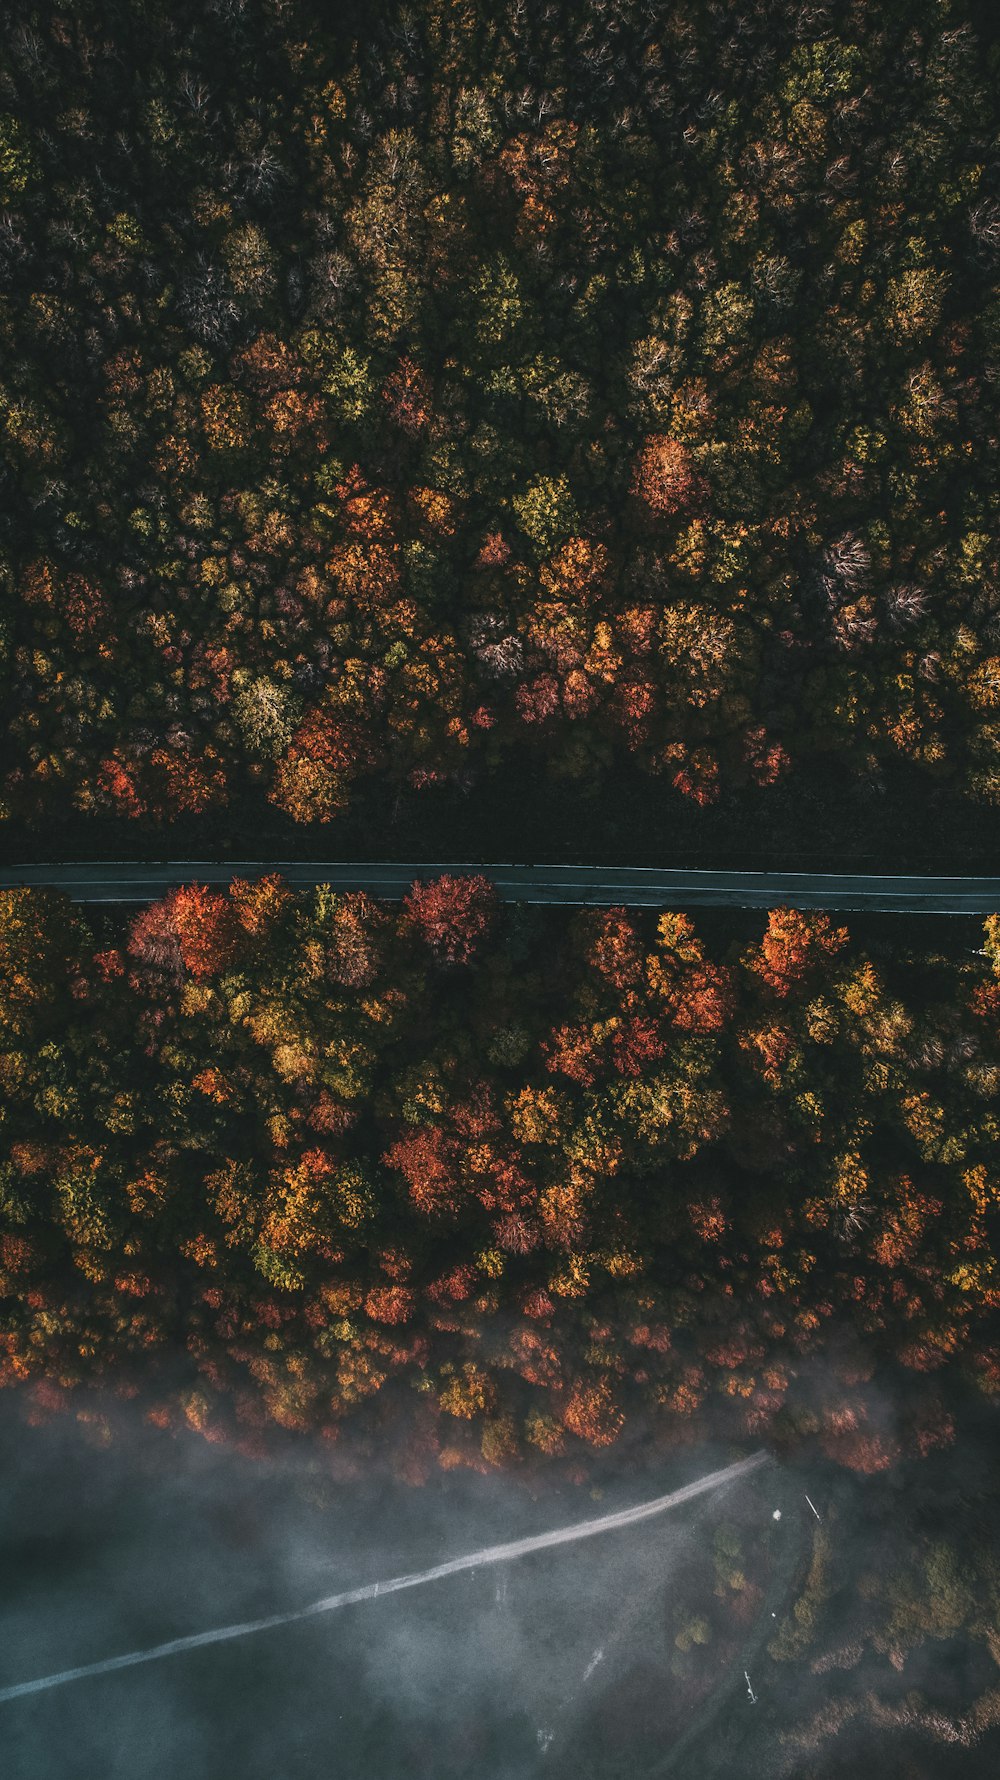 Photographie aérienne de la chaussée et des arbres